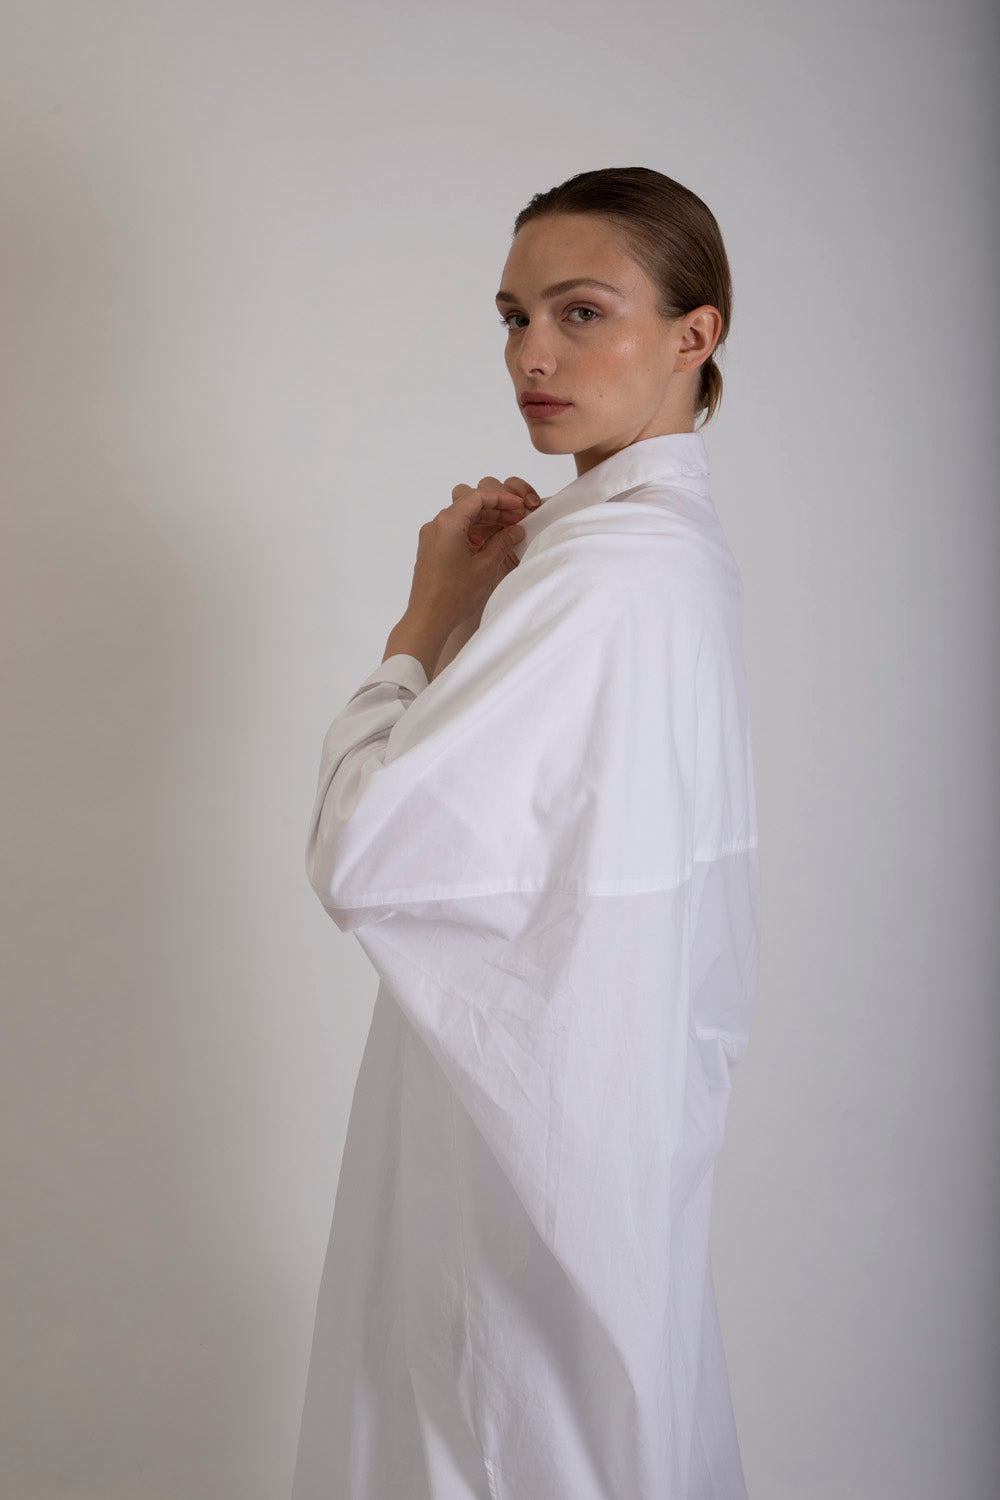 Long White Kimono Shirt